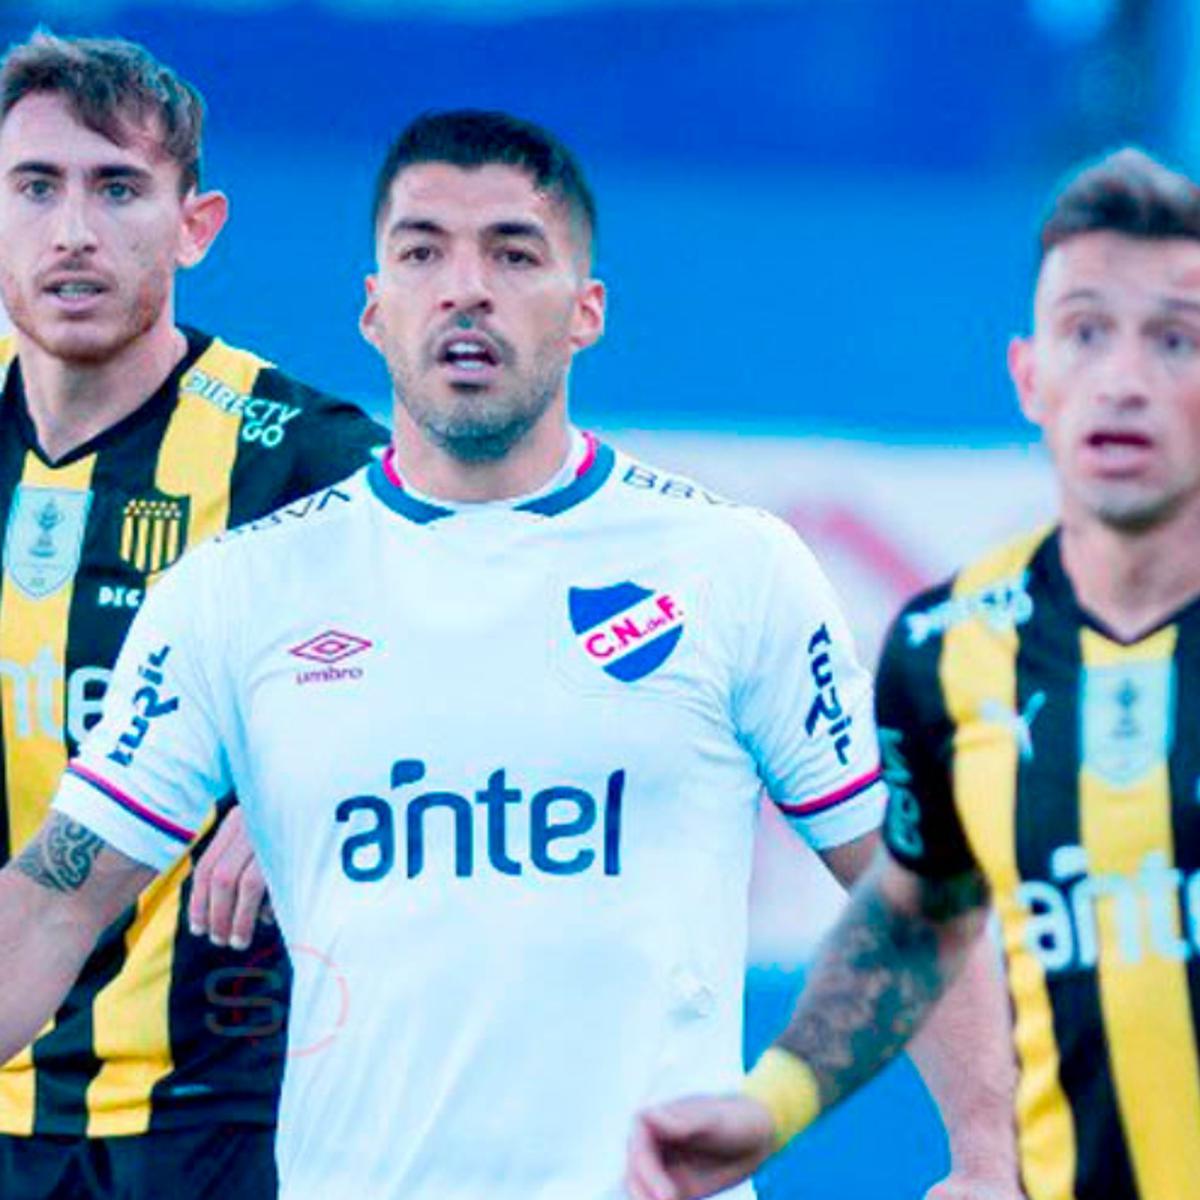 Clausura: Hoy se juega el clásico del fútbol uruguayo - RO Contenidos